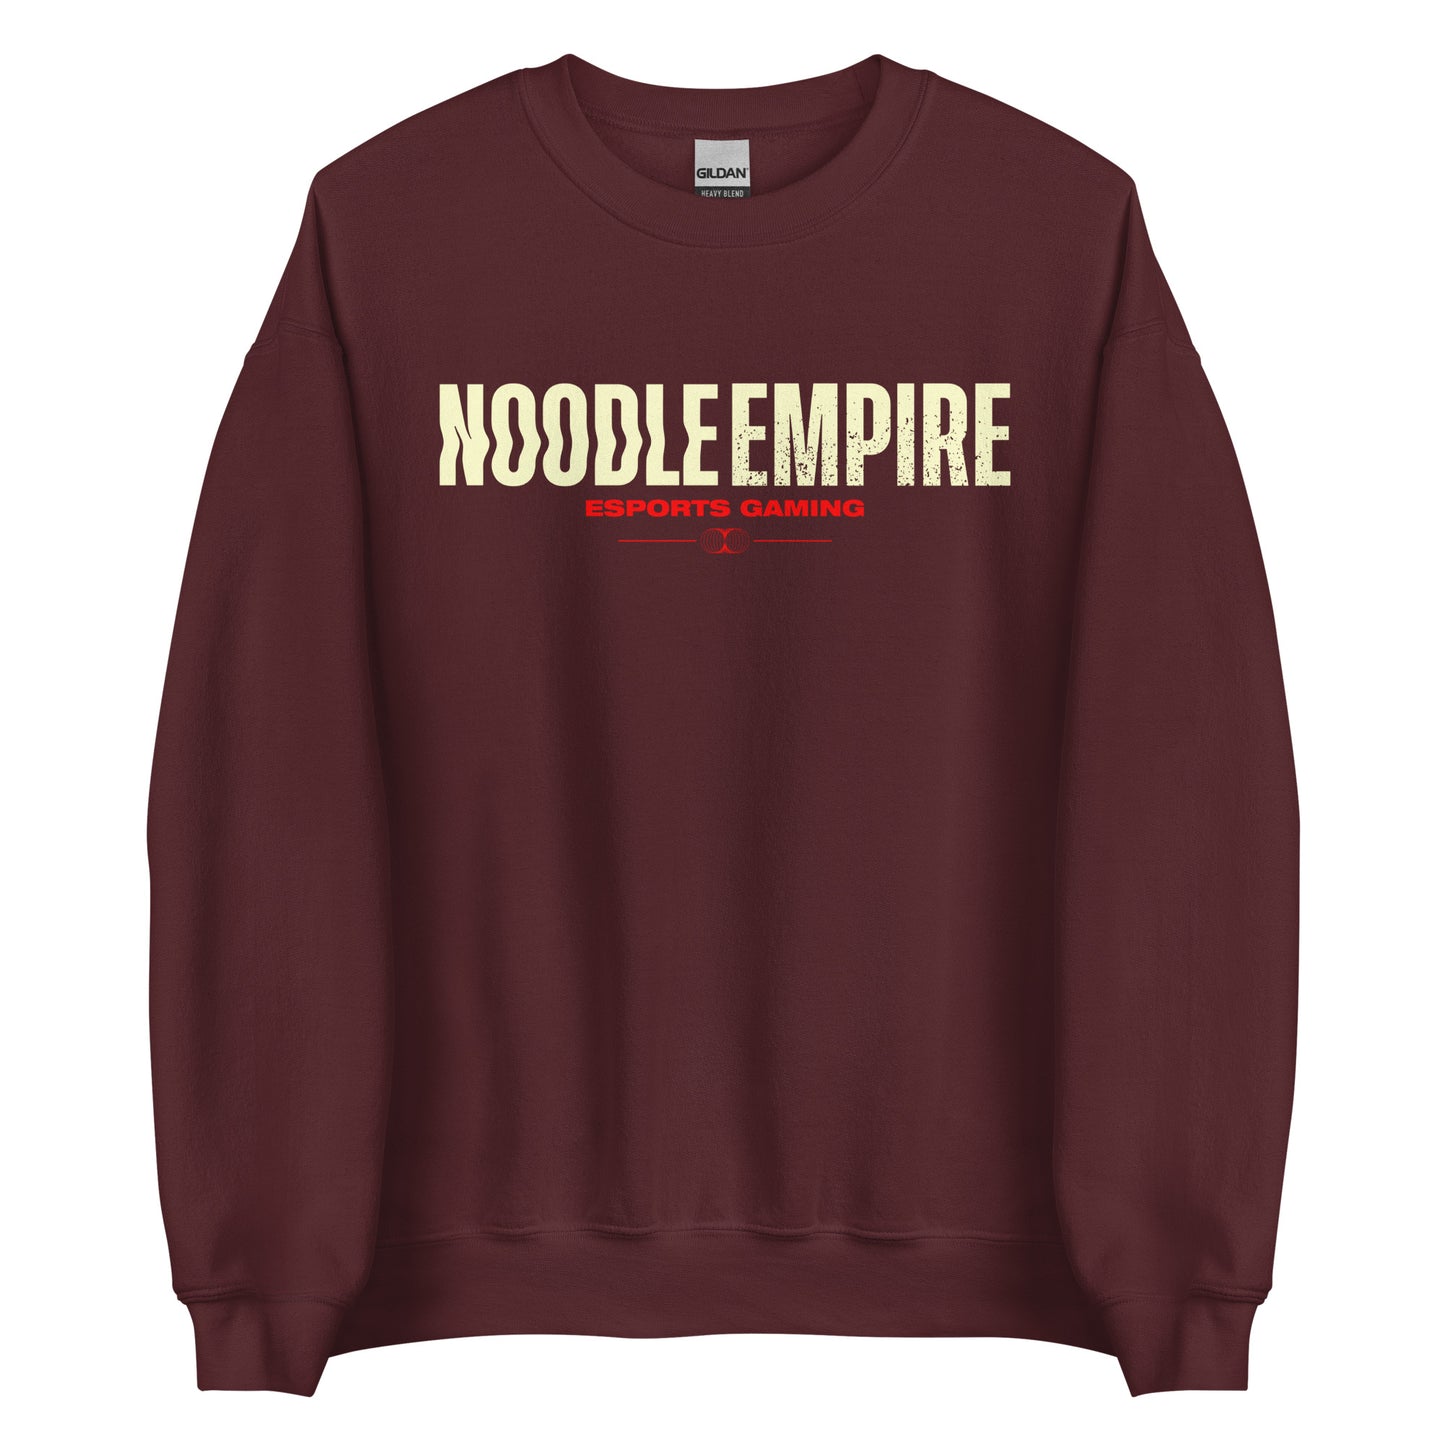 Noodle Empire Crewneck: Classic Look